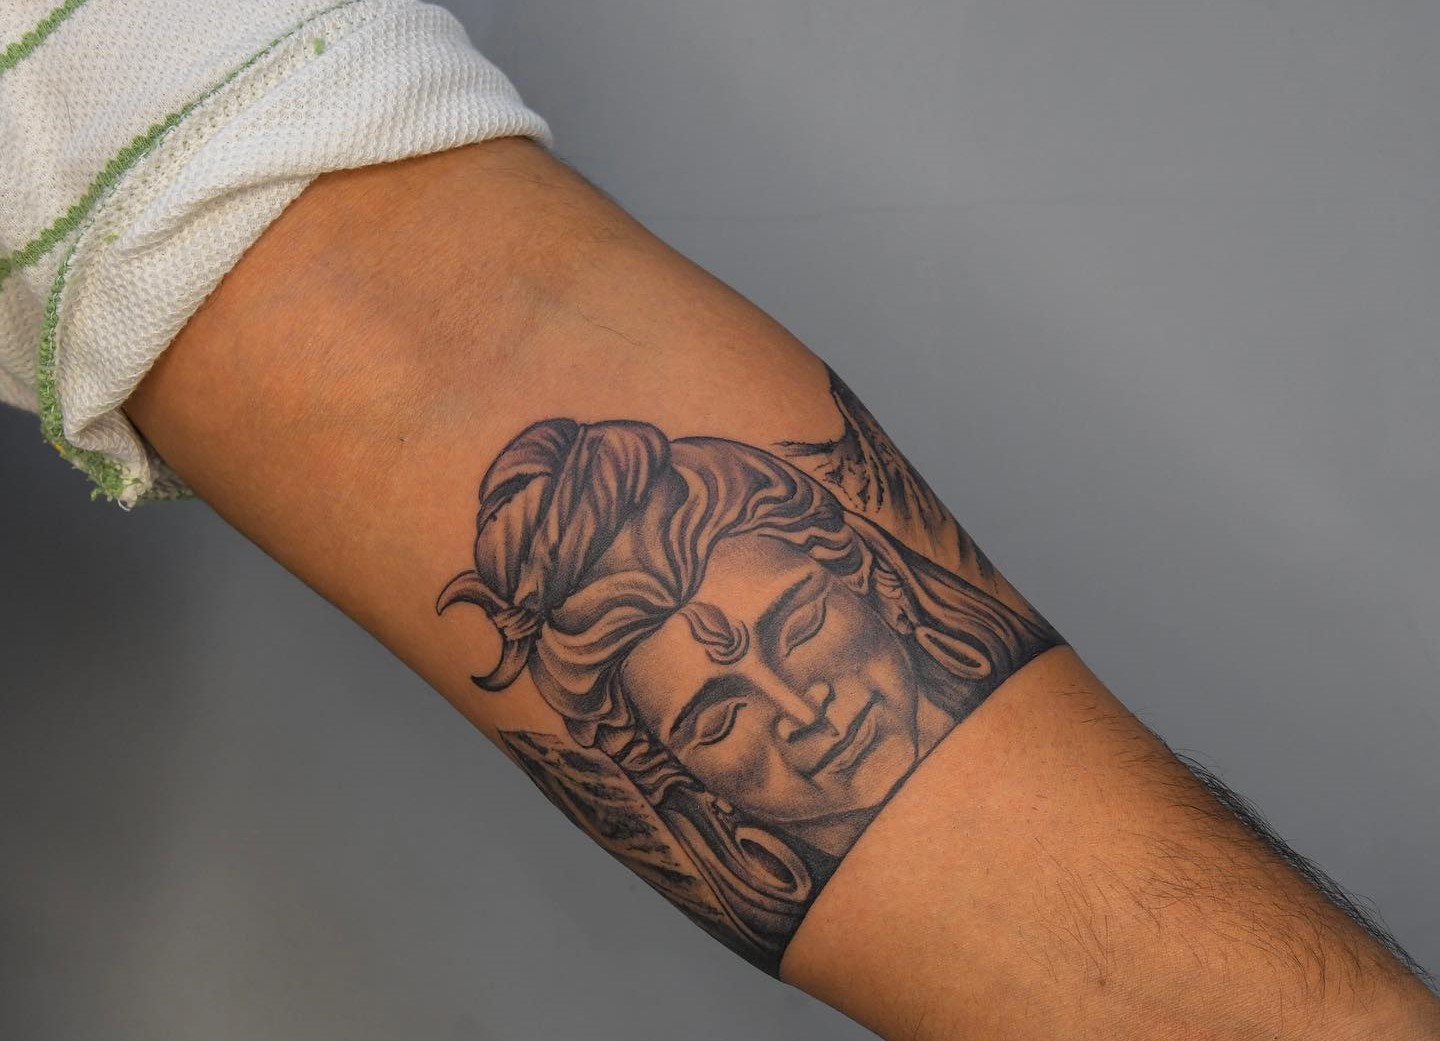 Tattoo uploaded by Samurai Tattoo mehsana • Mahadev tattoo |Shiva tattoo  |Mahadev tattoo ideas |Shiva tattoo design • Tattoodo